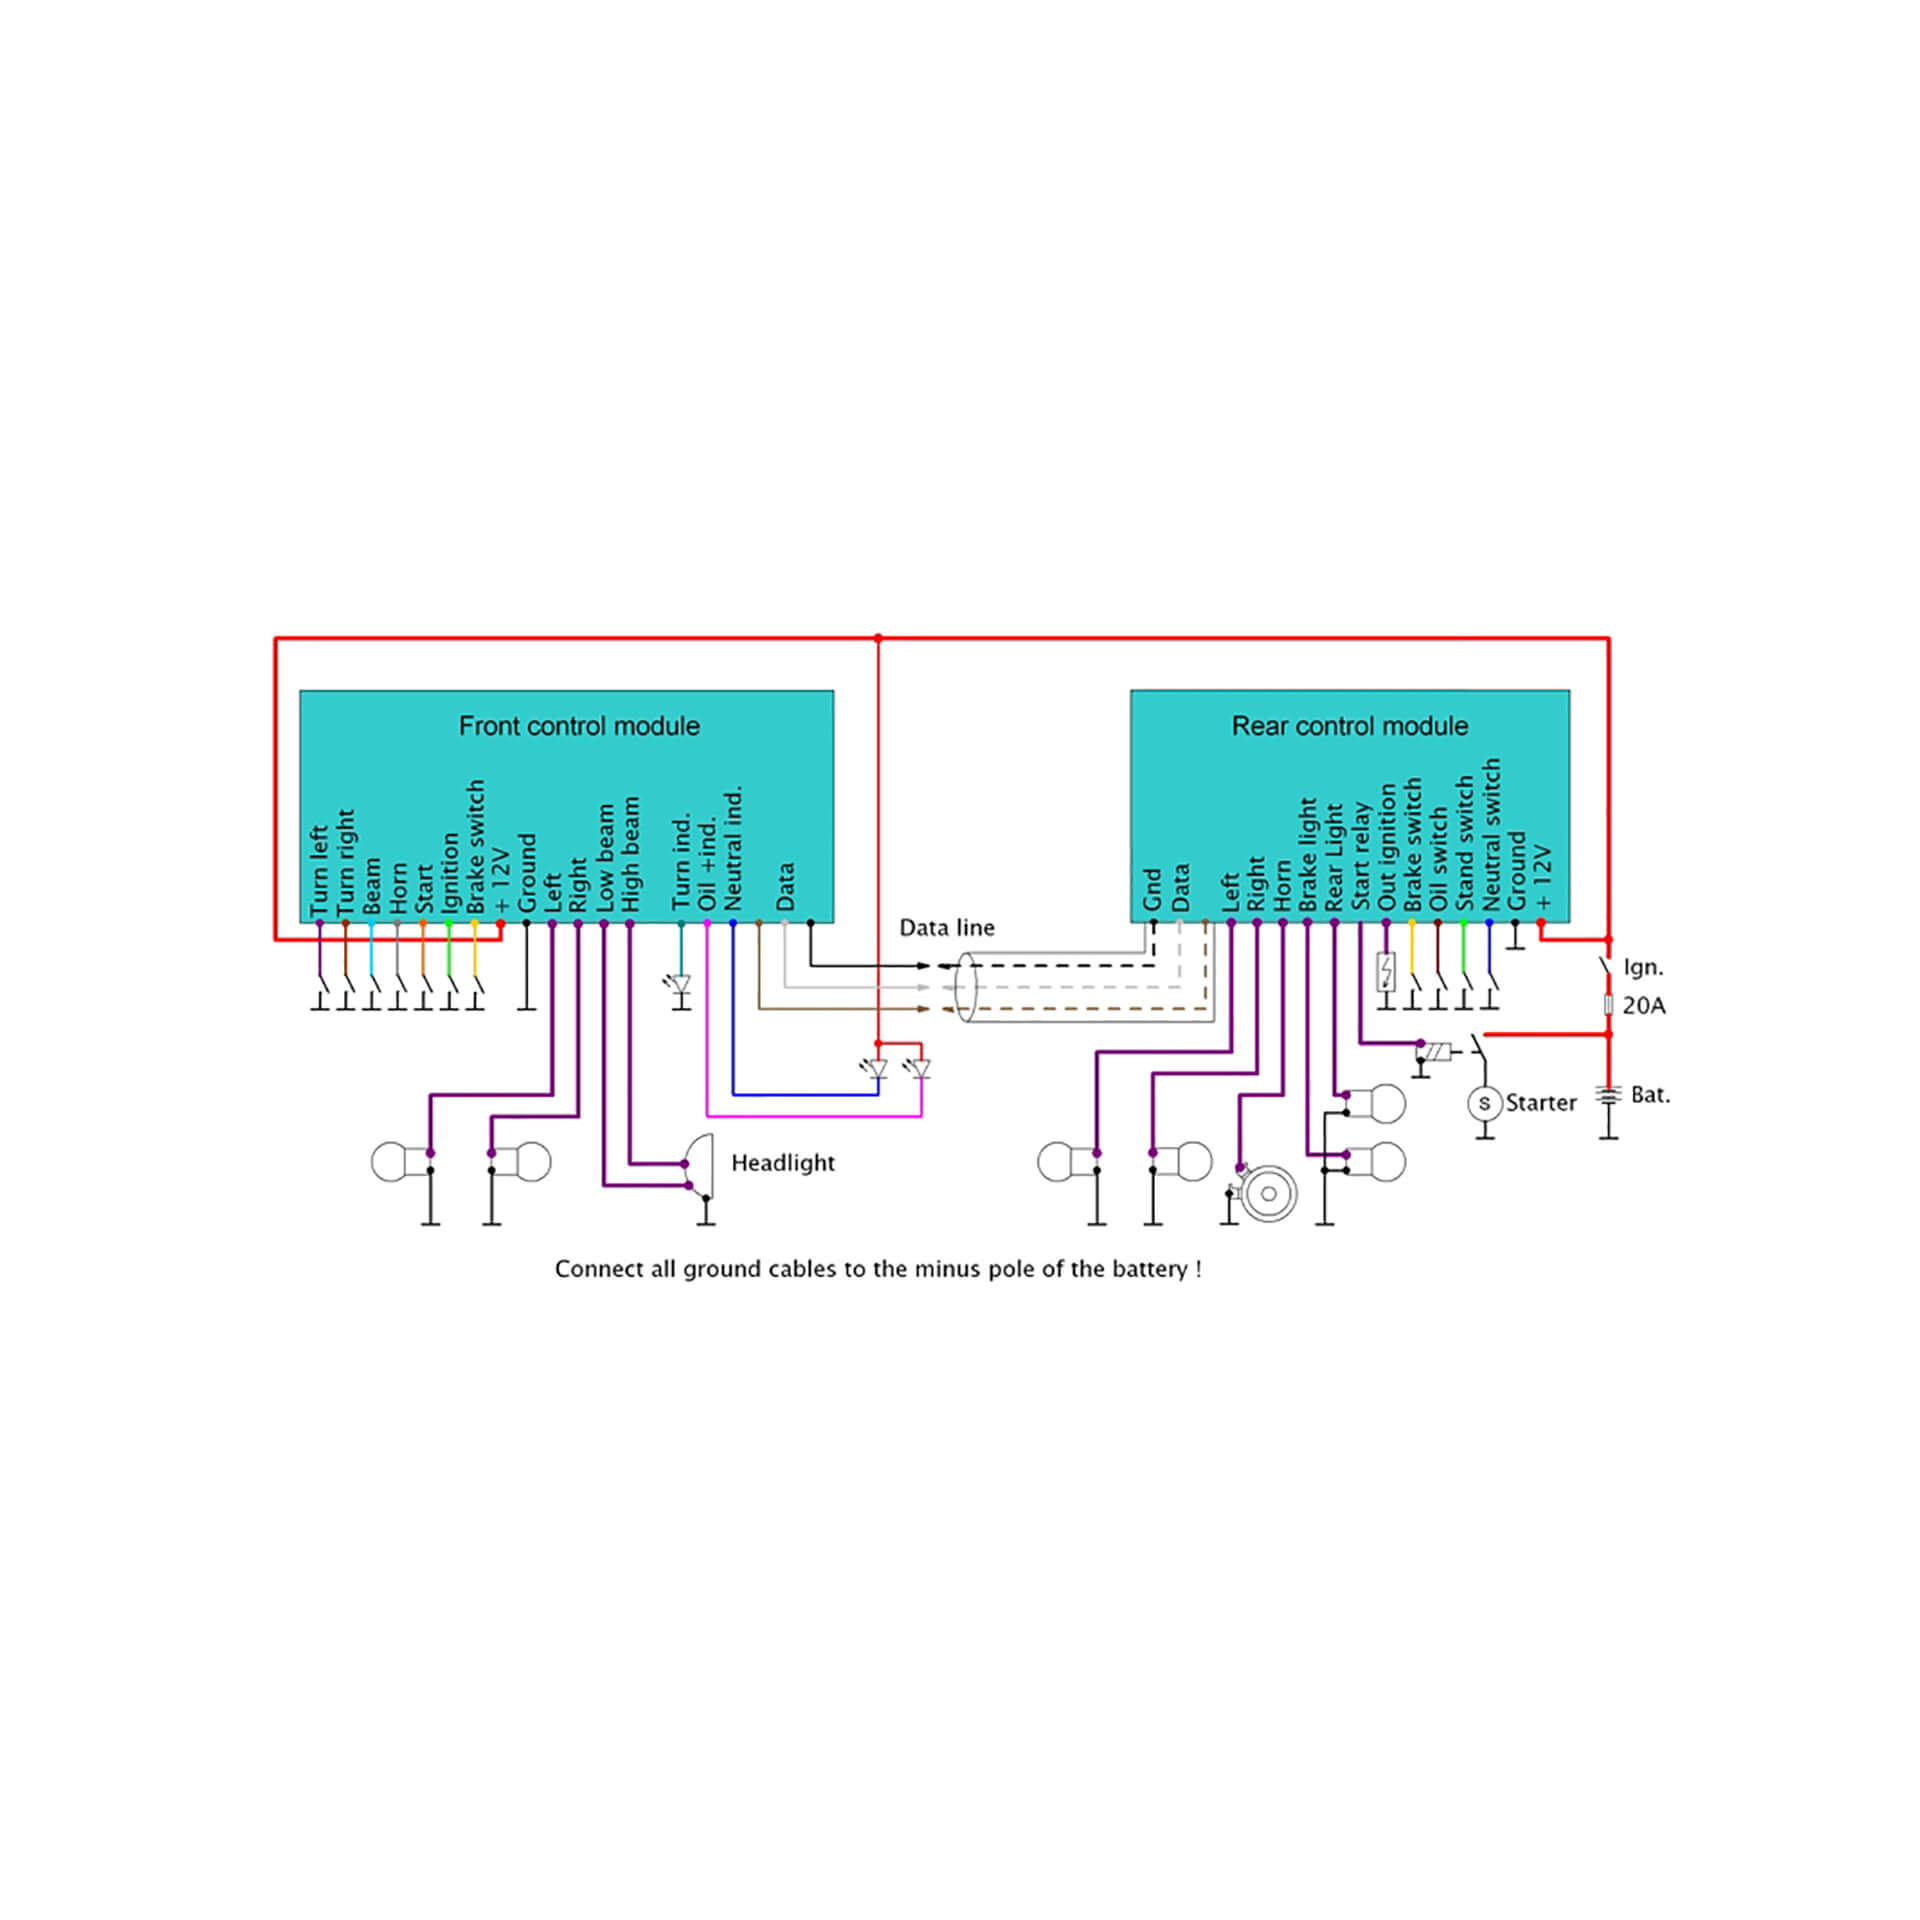 axel_joost Digitaler Kabelbaum Version C-BS für Schalter - und Tastenbetrieb